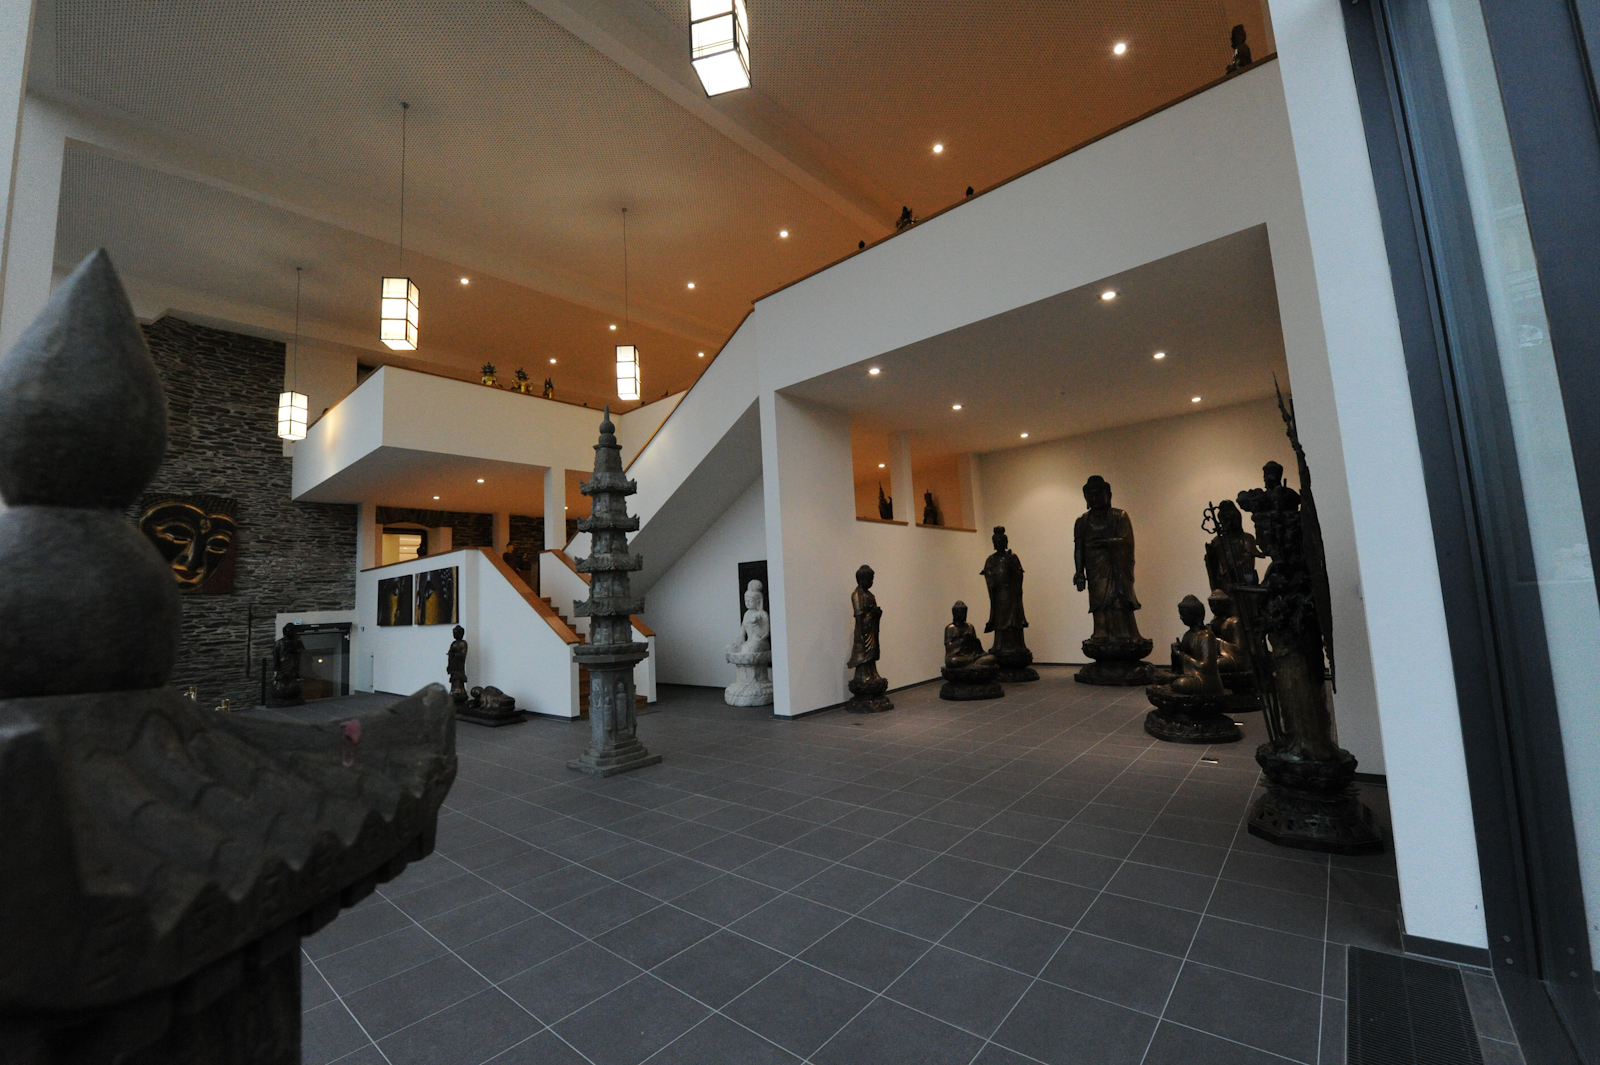 Buddha-Museum